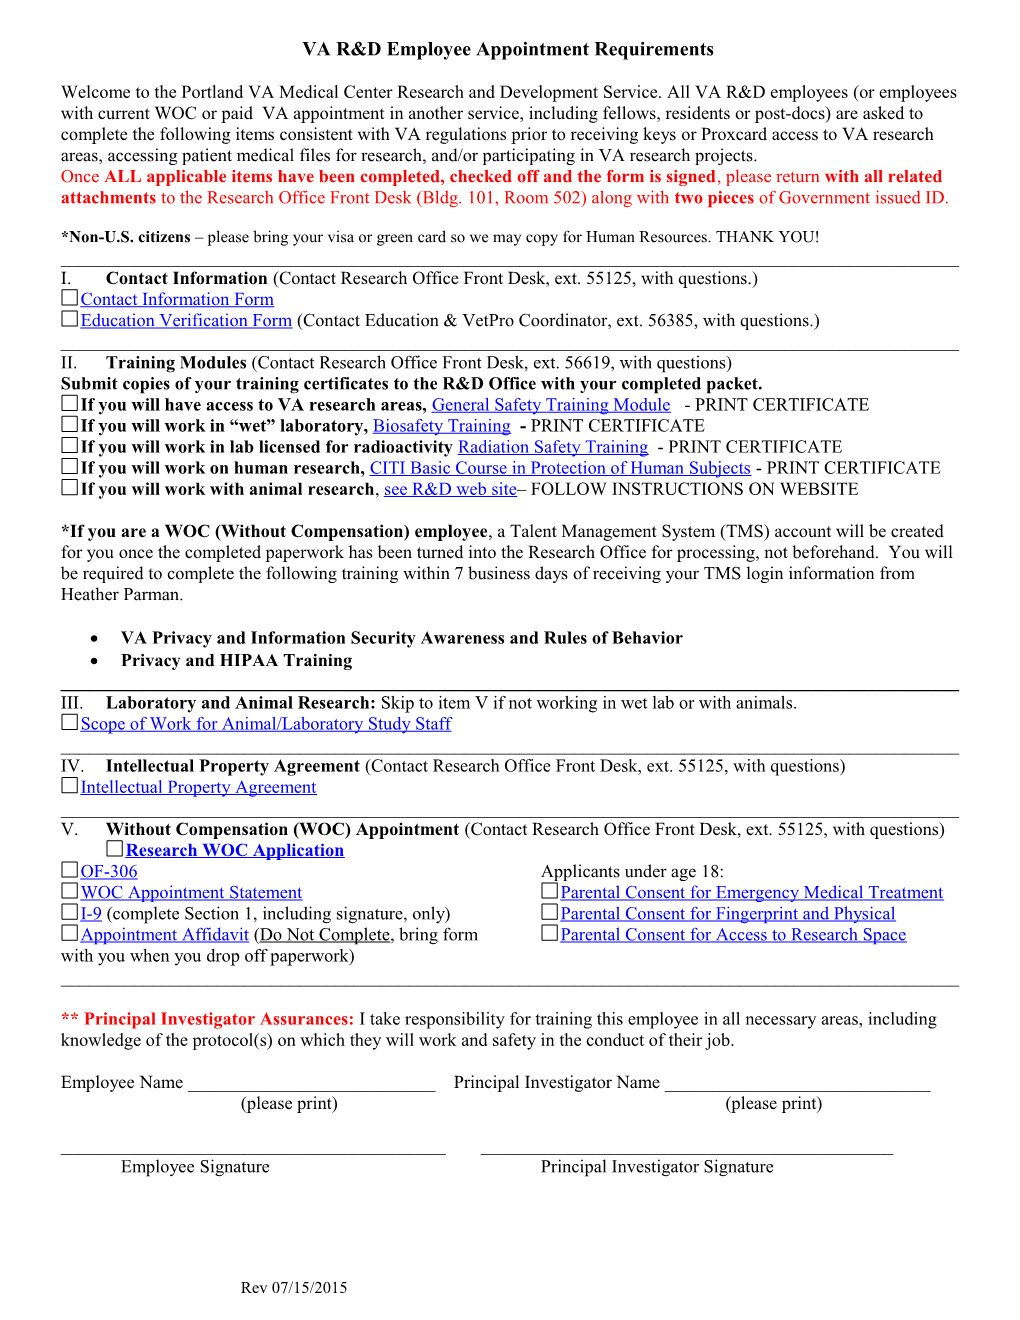 VA Appointment Requirements VA Employee (Portland VA Medical Center)